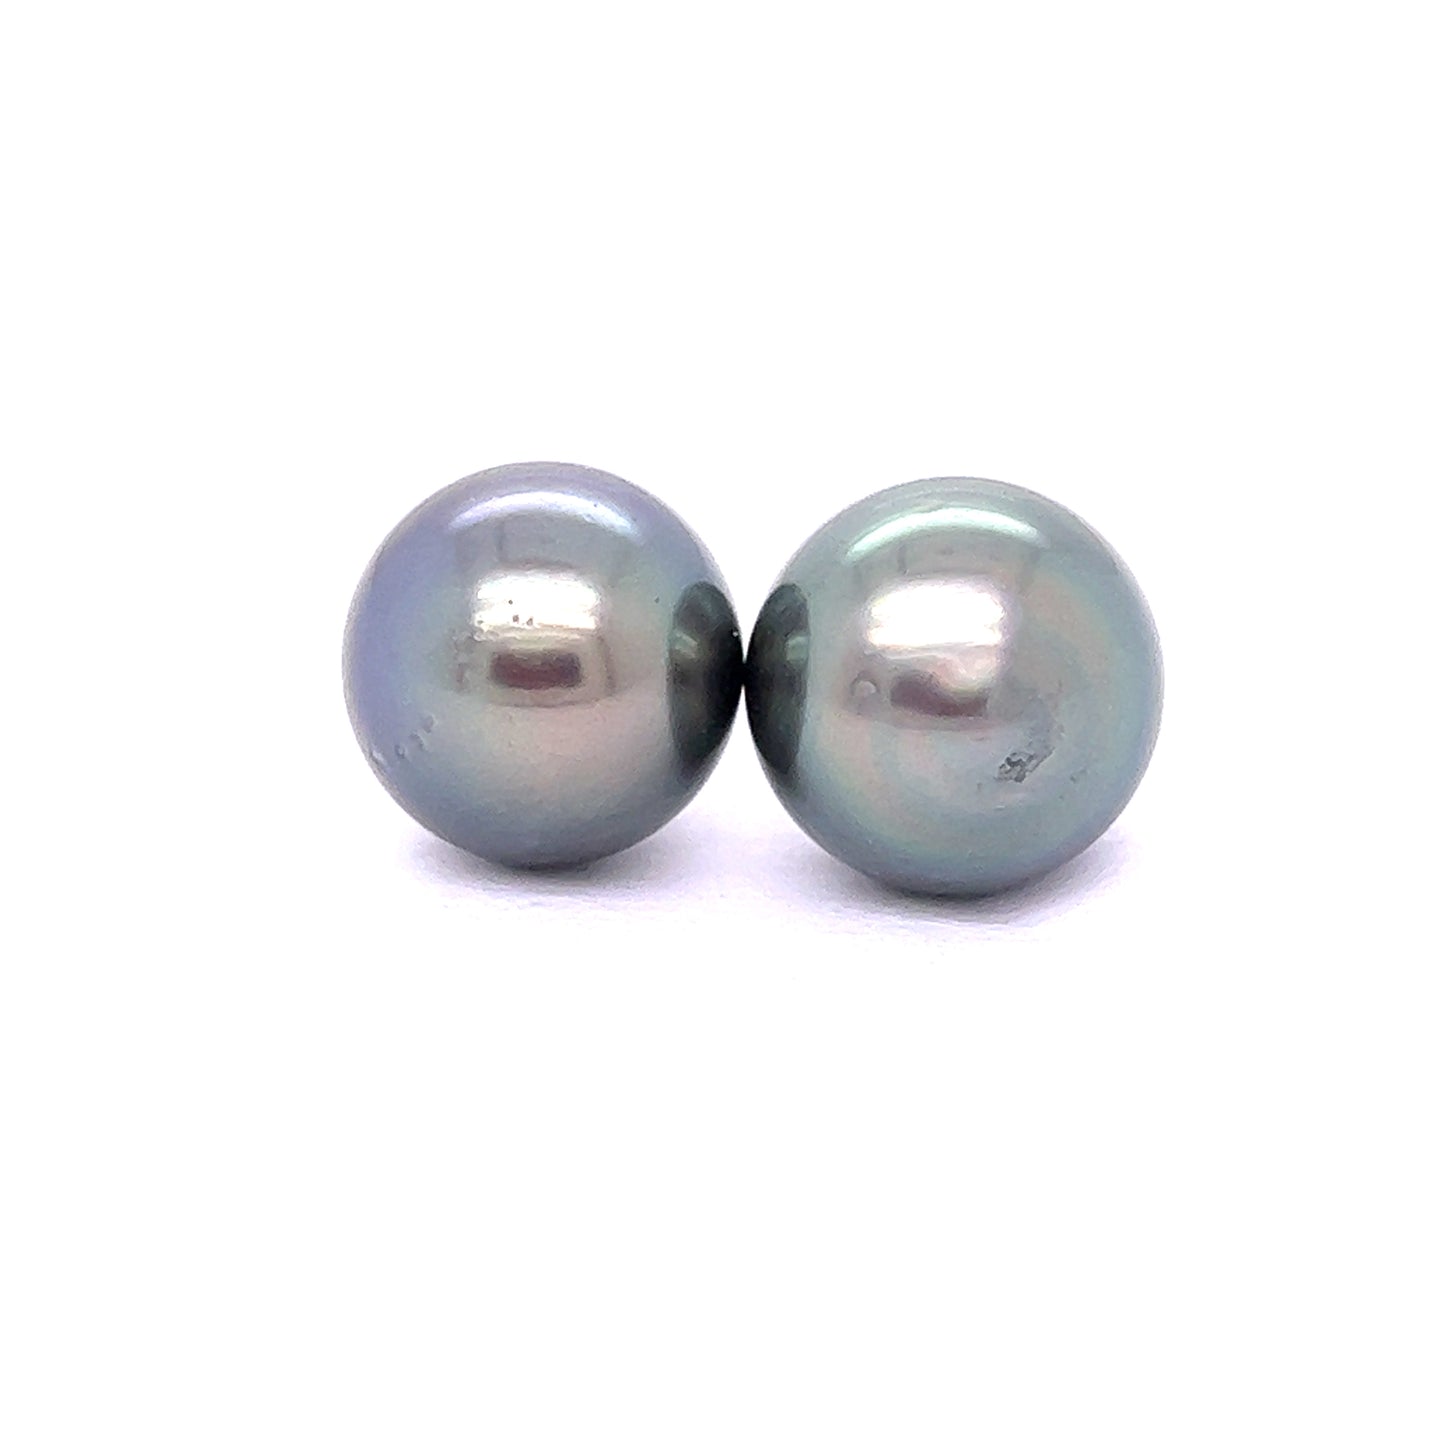 Swirl pearl earrings